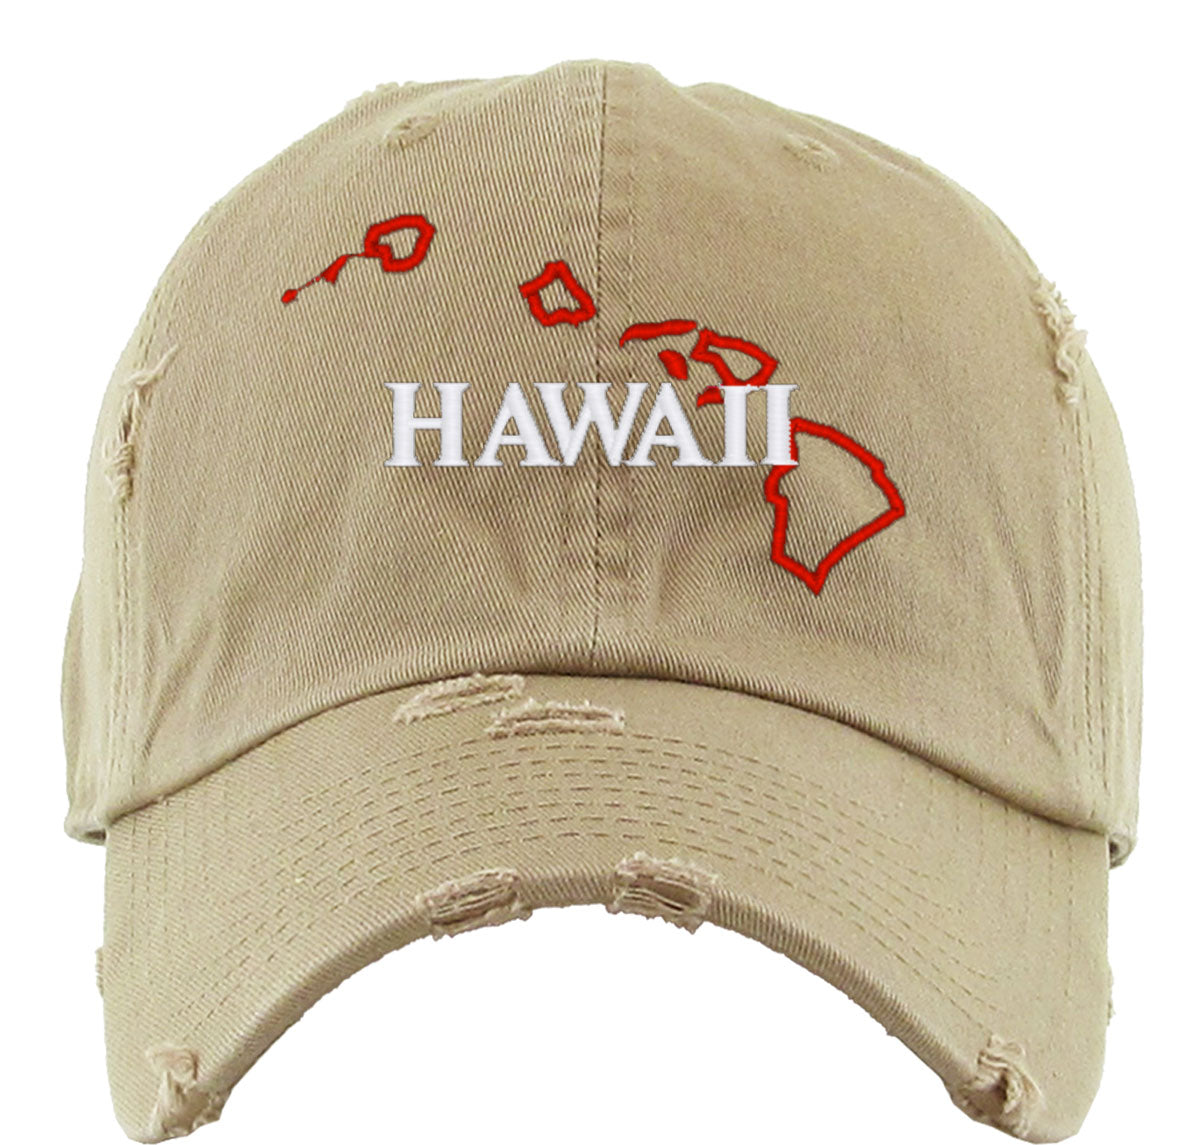 Hawaii Vintage Baseball Cap